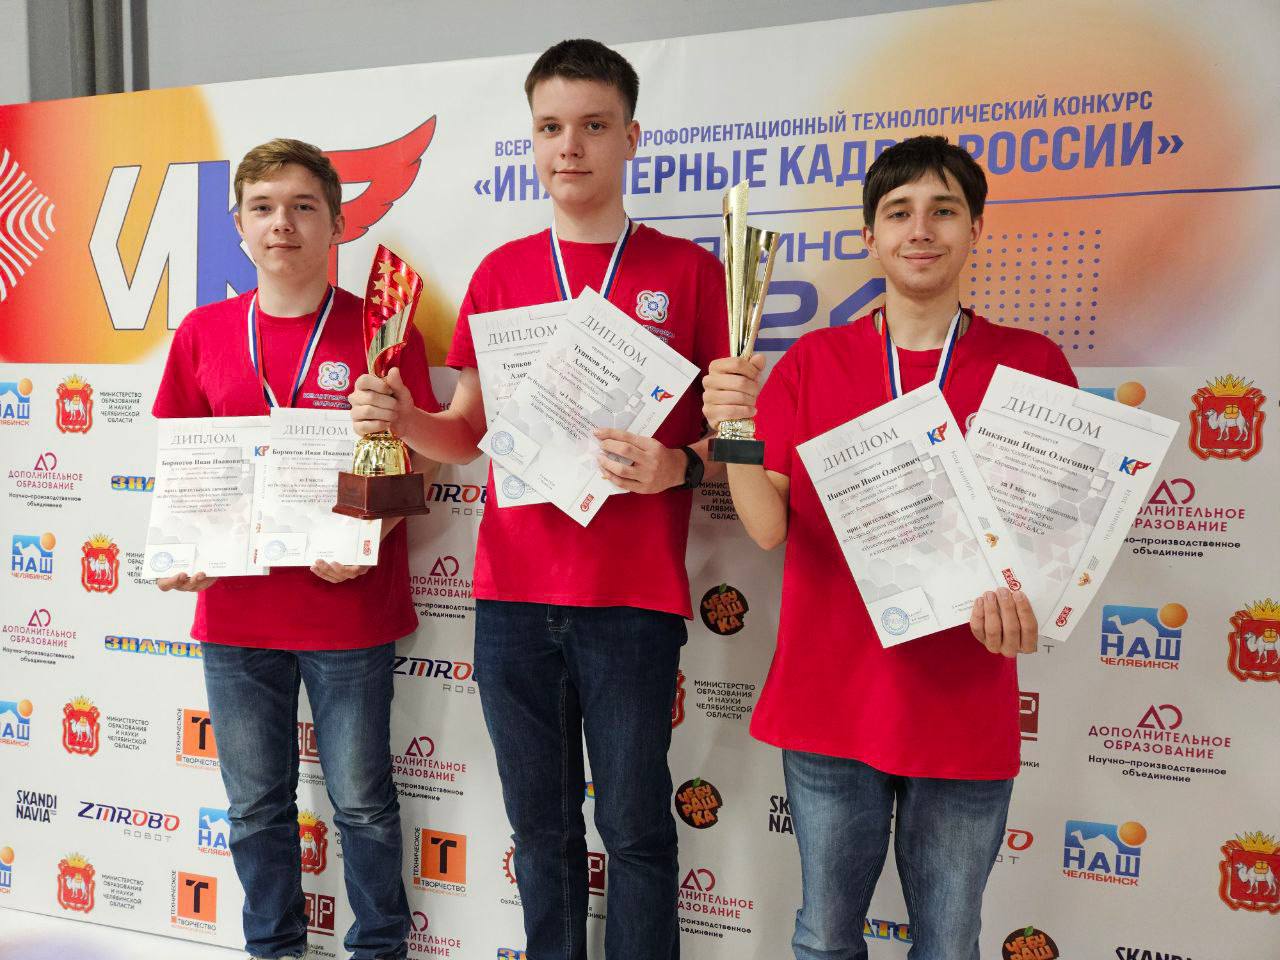 Саратовские школьники стали лучшими в России по разработке и программированию беспилотников